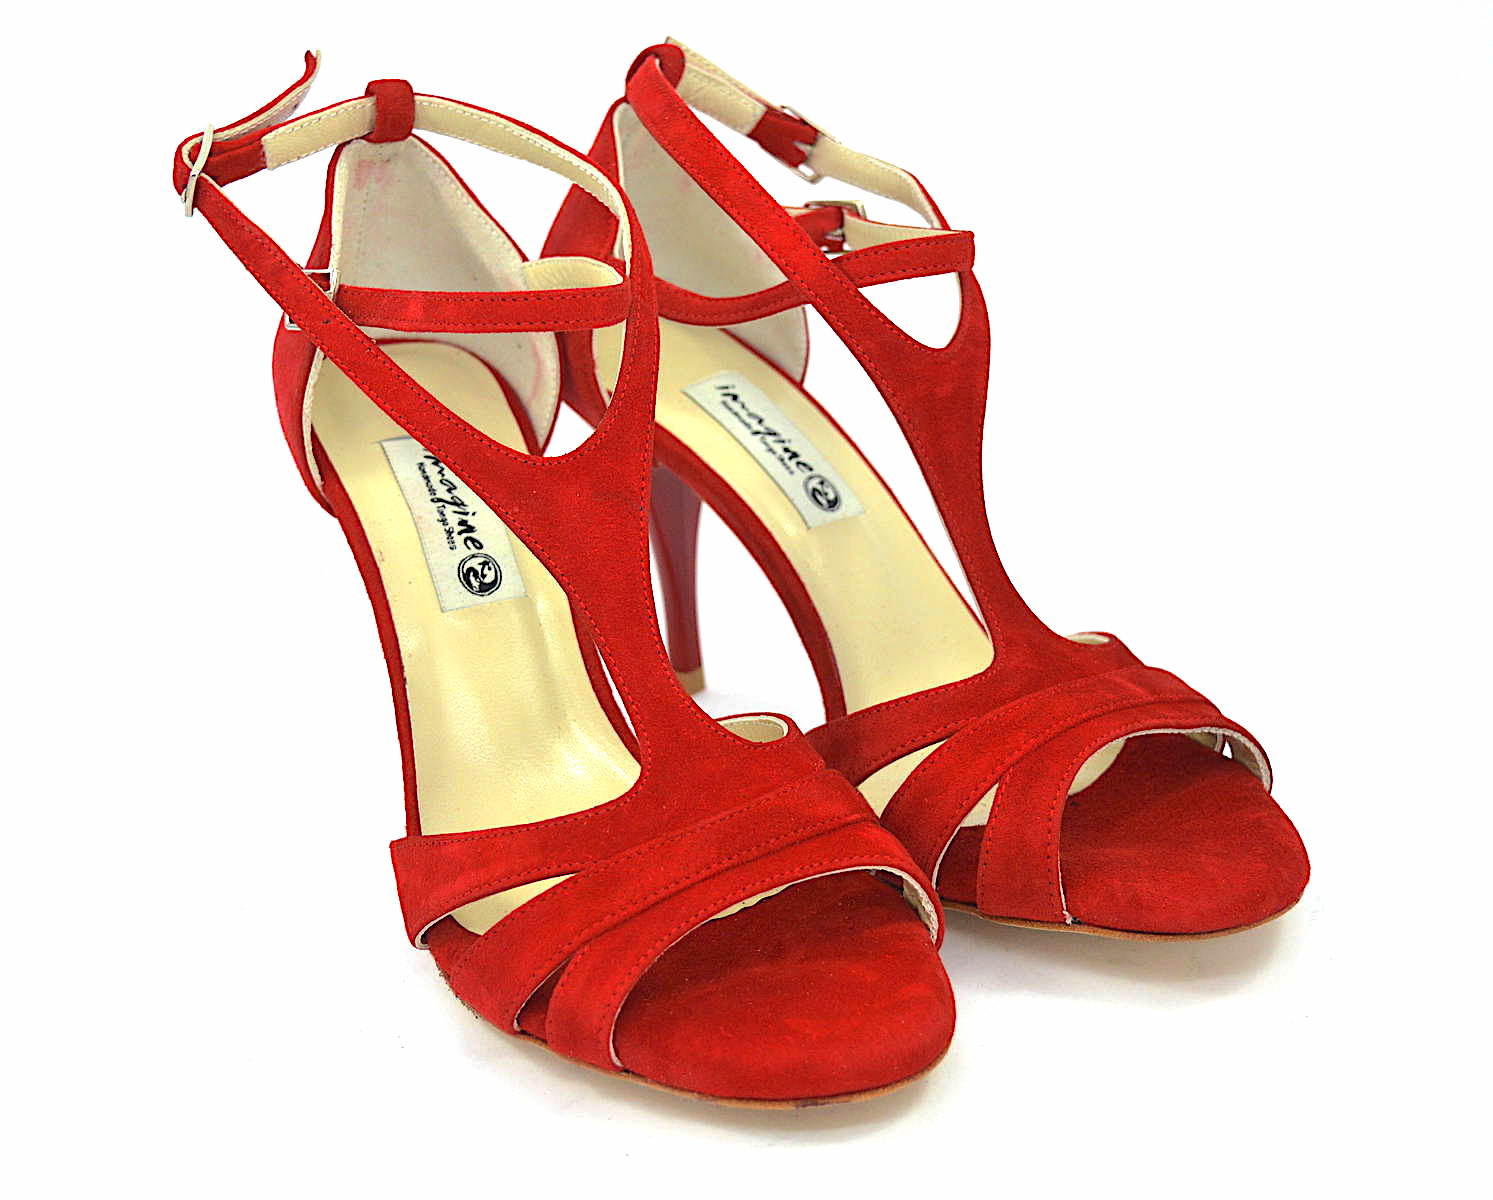 Γυναικείο παπούτσι tango argentino, open toe από εντυπωσιακό κόκκινο σουέντ δέρμα